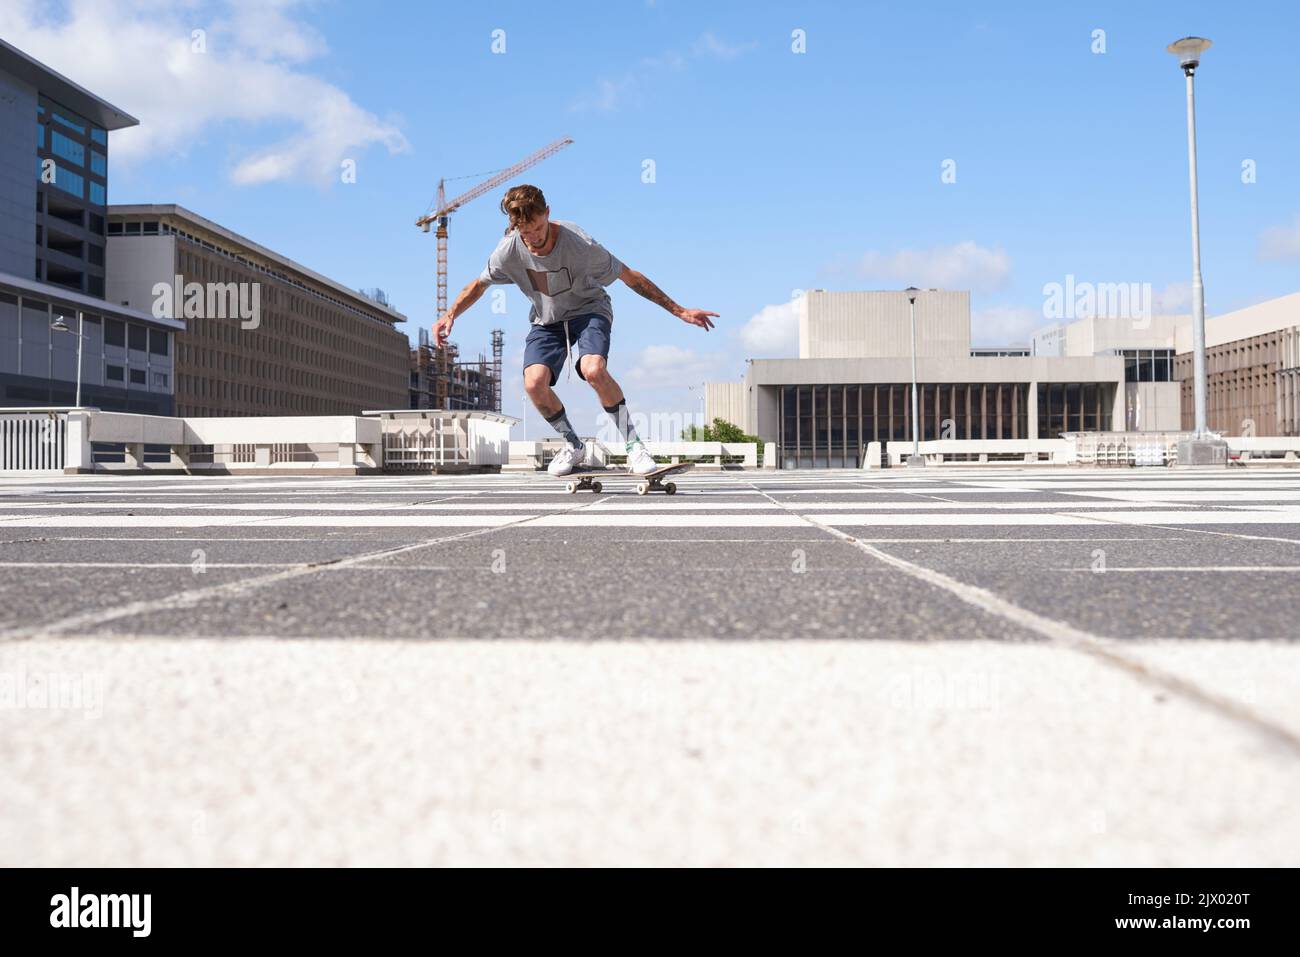 Le patinage est plus qu'un passe-temps. Les skateboarders dans la ville. Banque D'Images